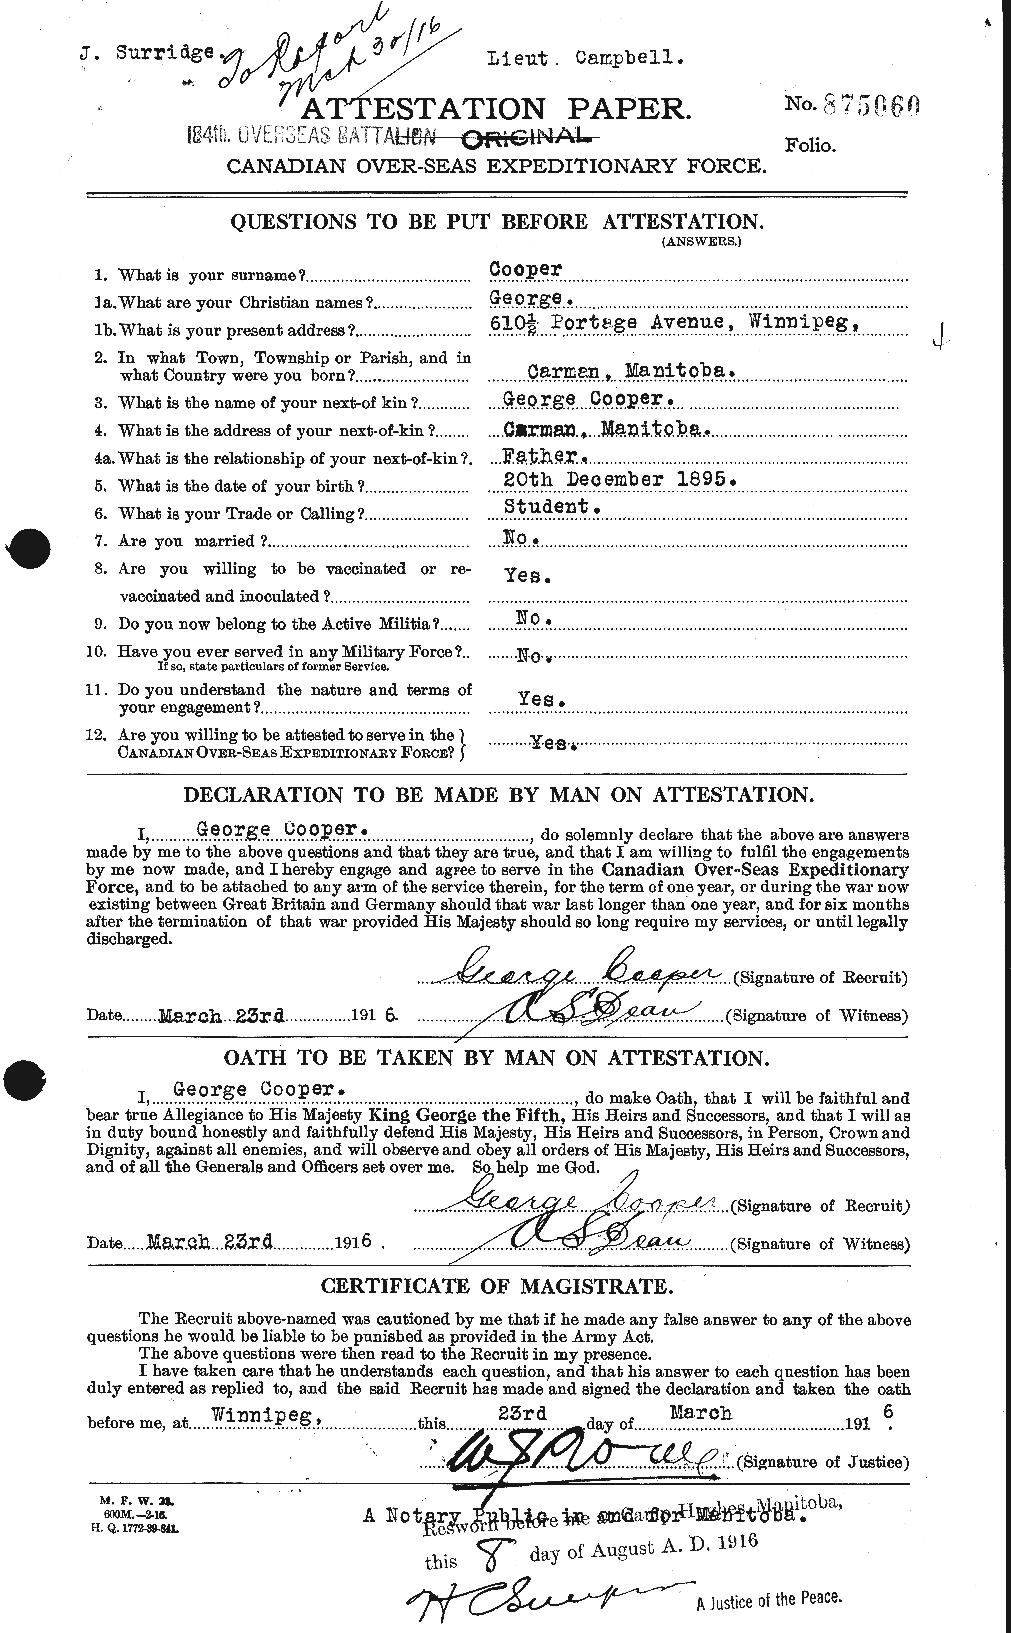 Dossiers du Personnel de la Première Guerre mondiale - CEC 057805a